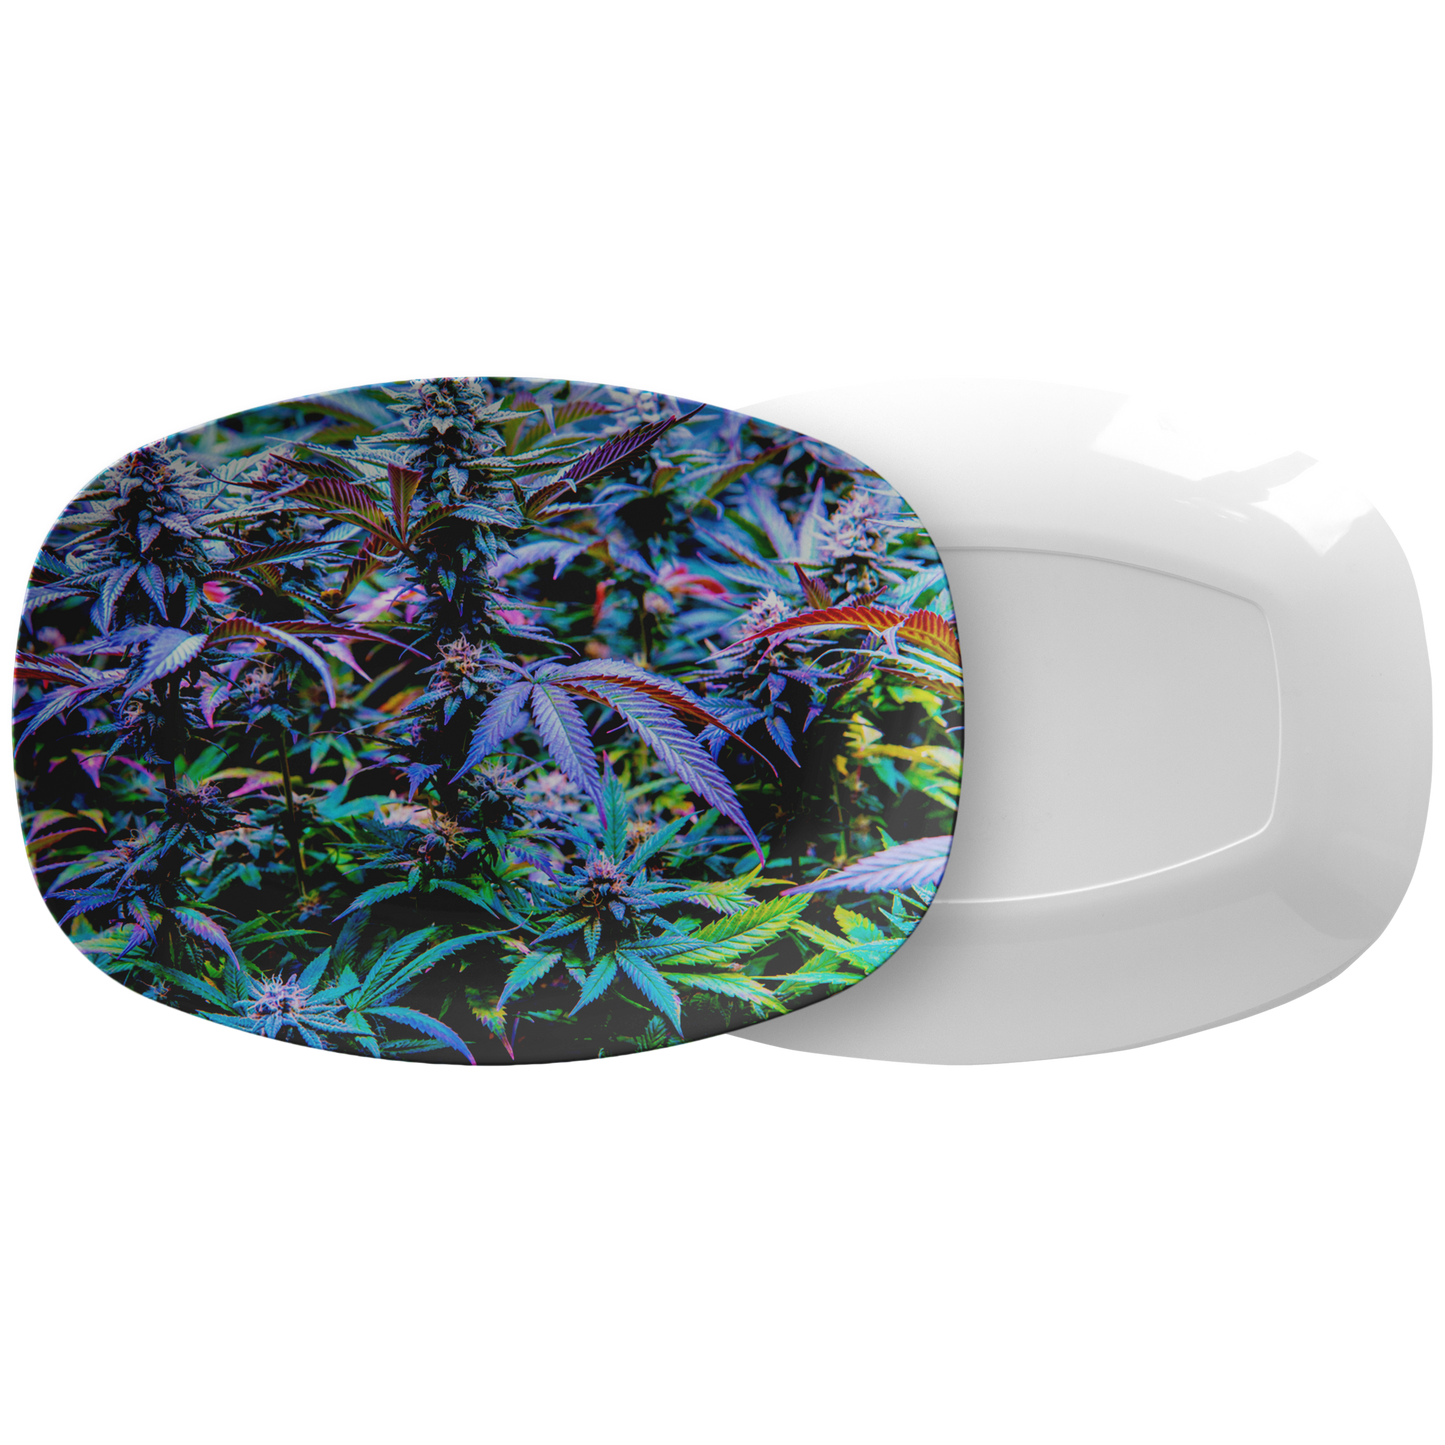 The Rainbow Cannabis Platter